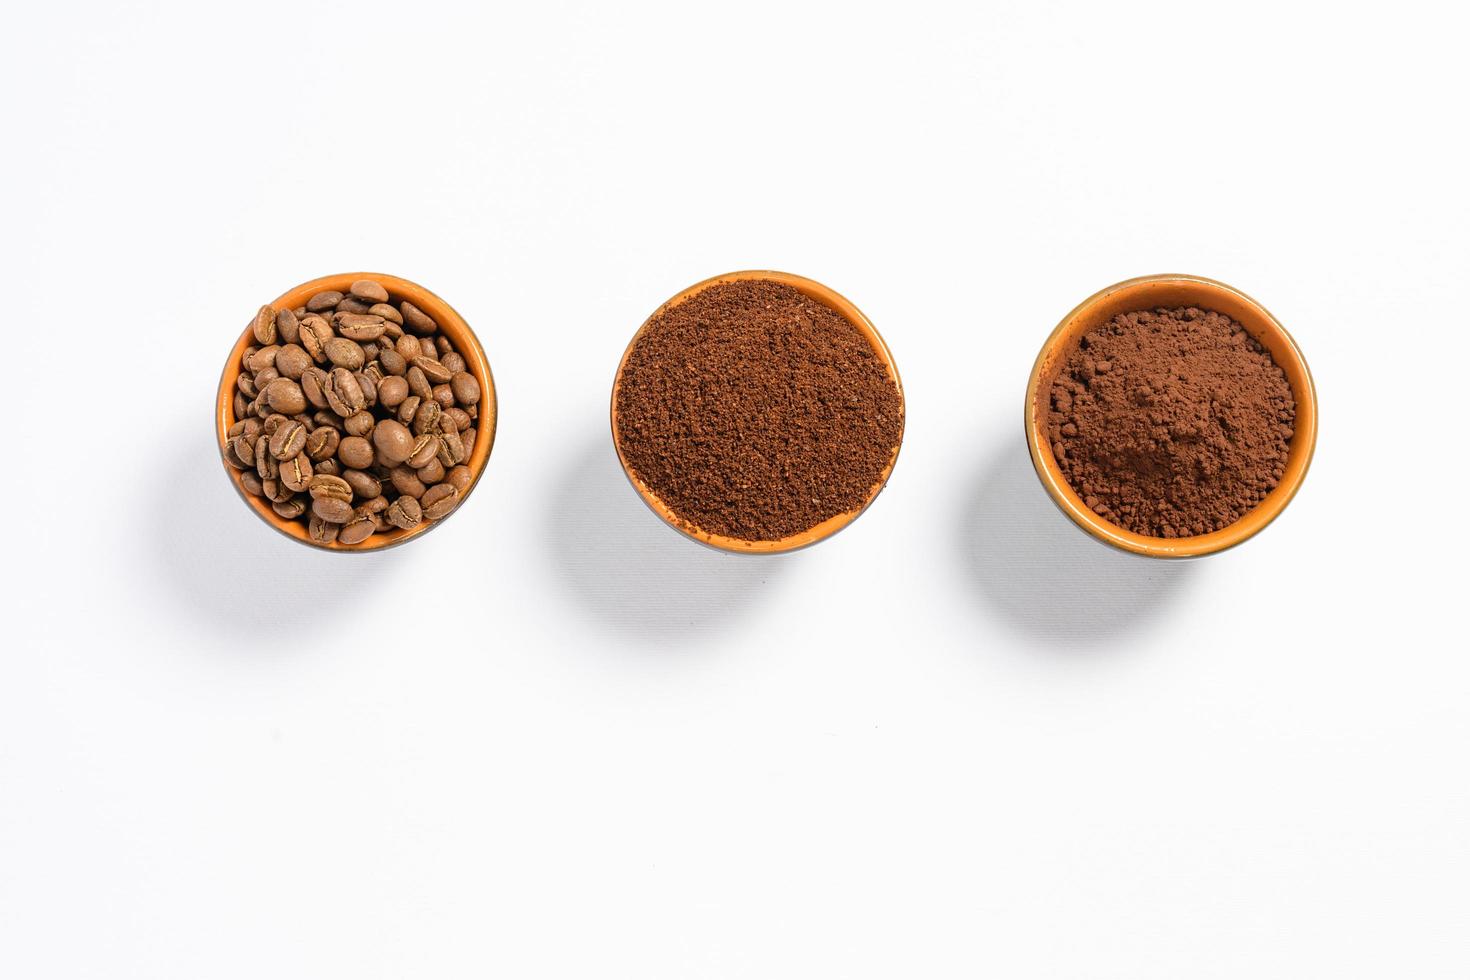 drie cups van koffie bonen, grond koffie en cacao voor vergelijking. foto